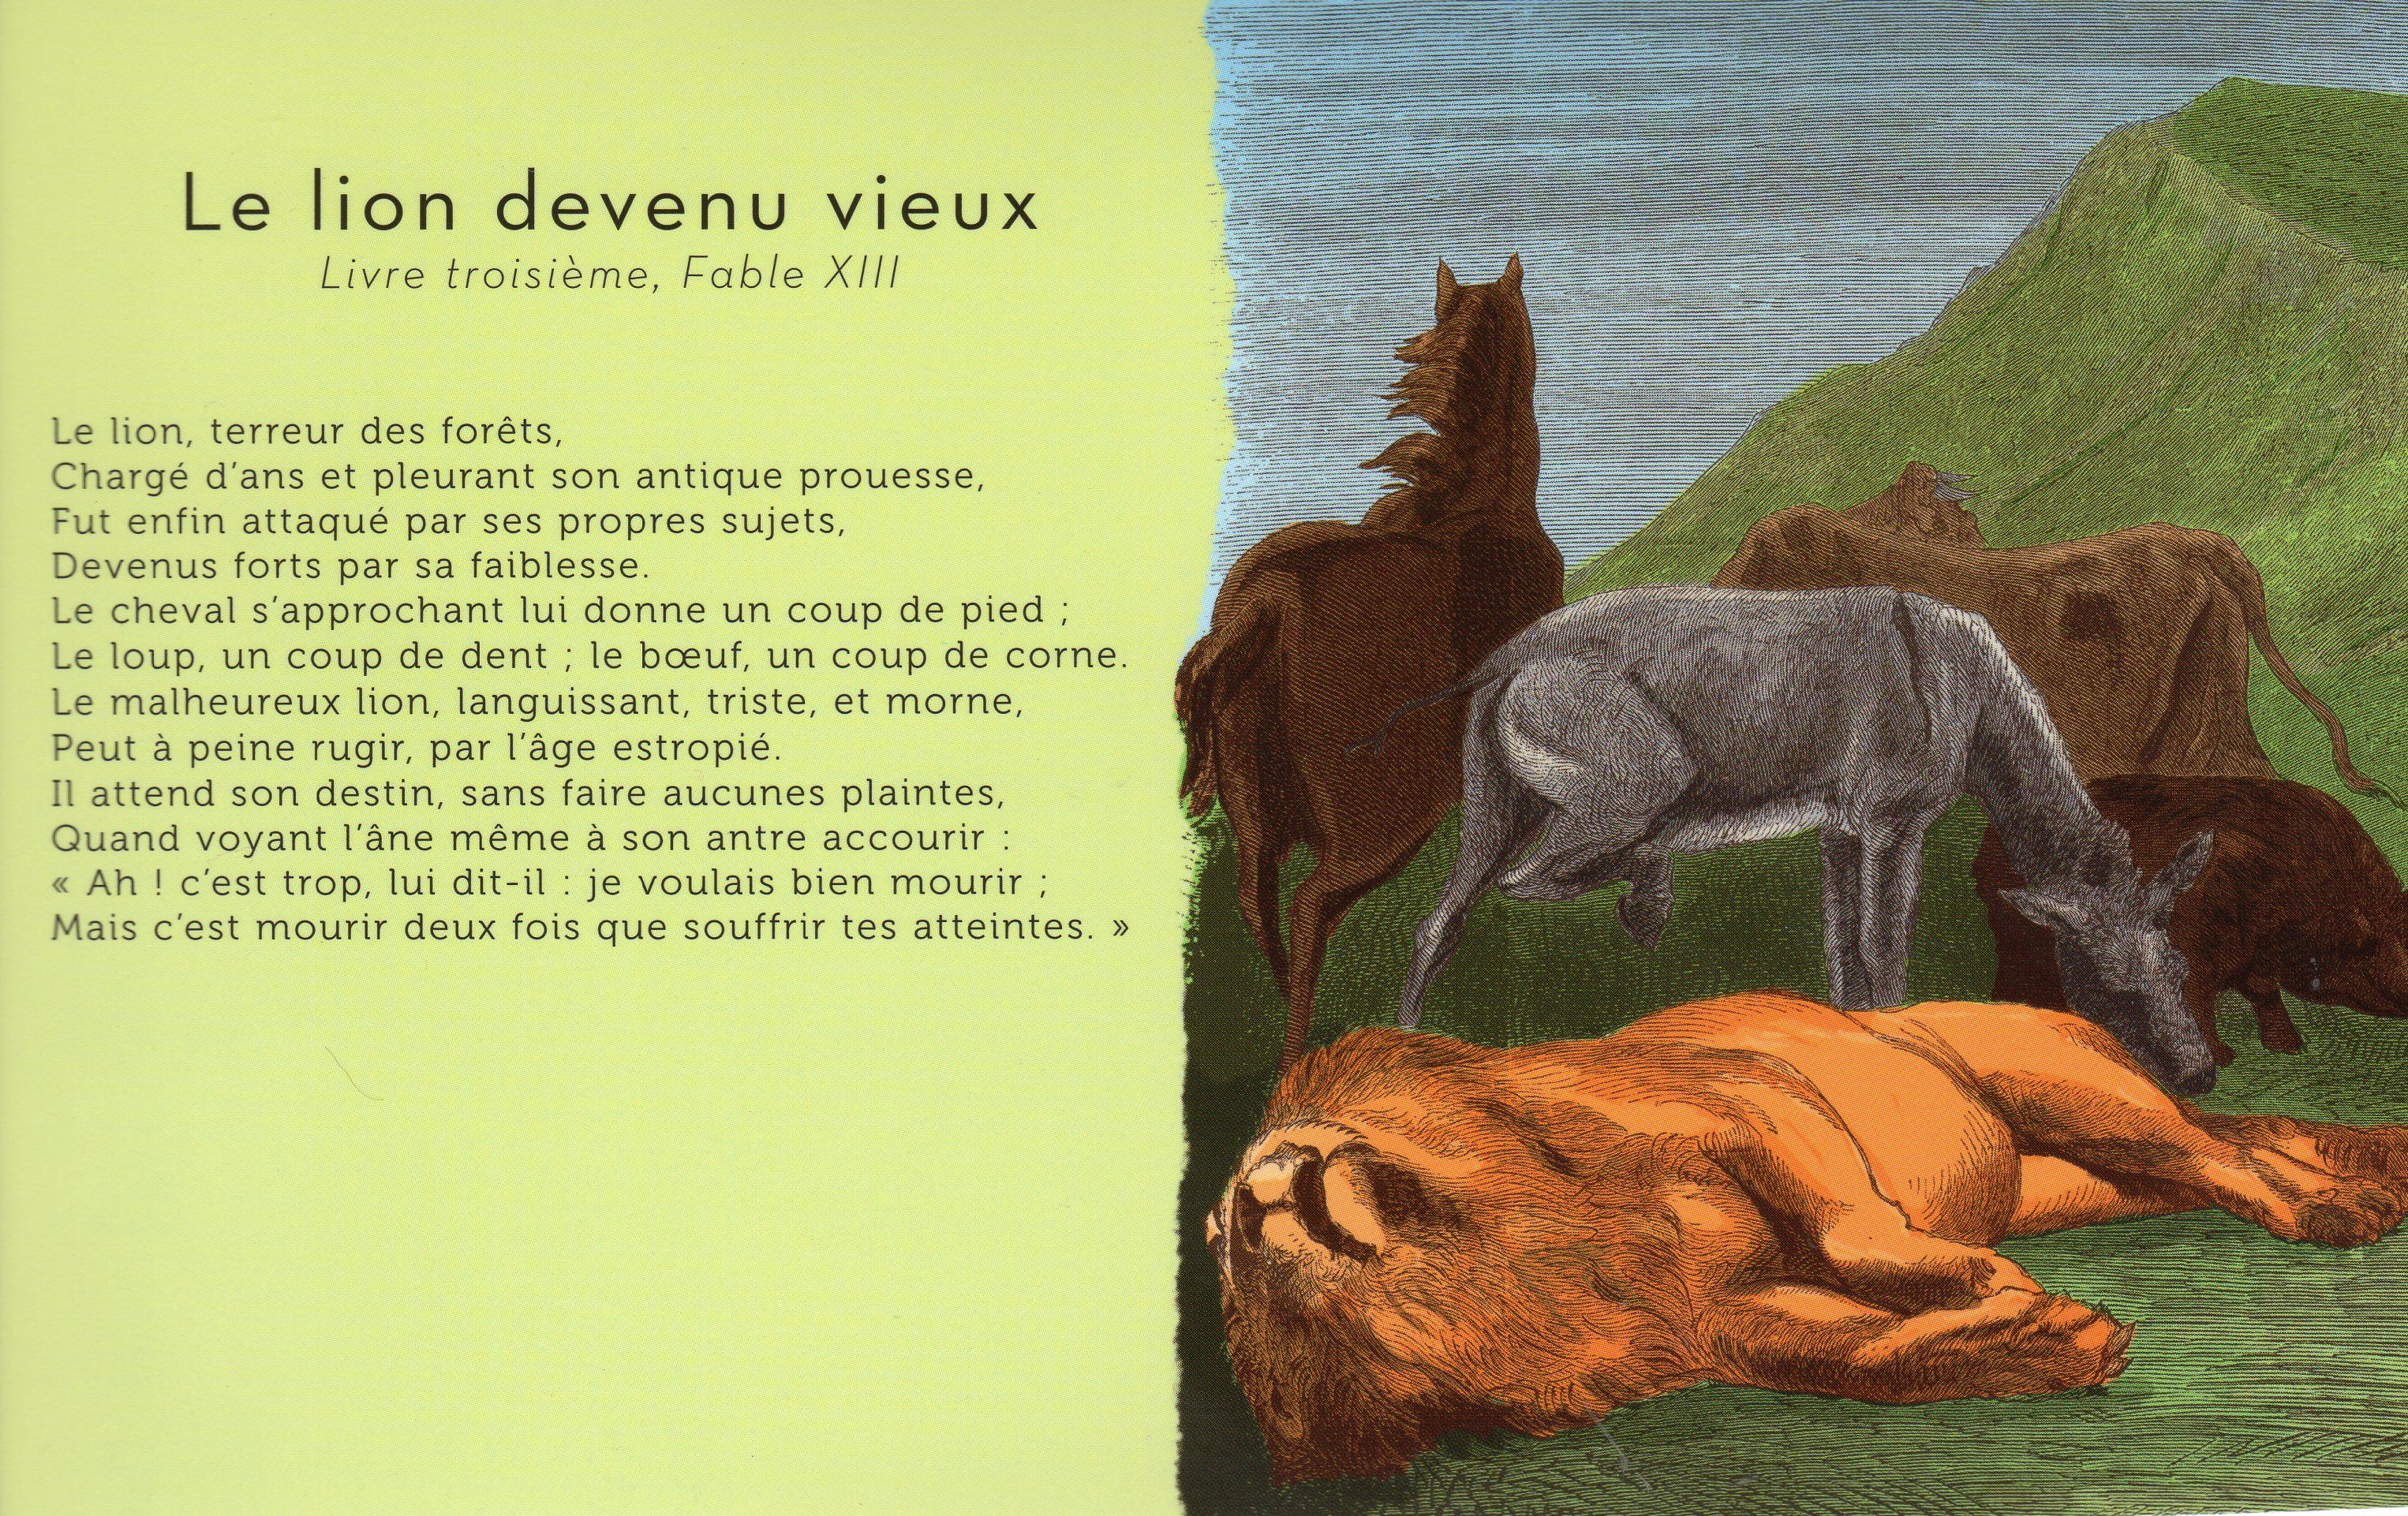 fontaine - "Le lion devenu vieux" Jean de La Fontaine+"Il faut du temps" Delphine JOUVE Df93c714